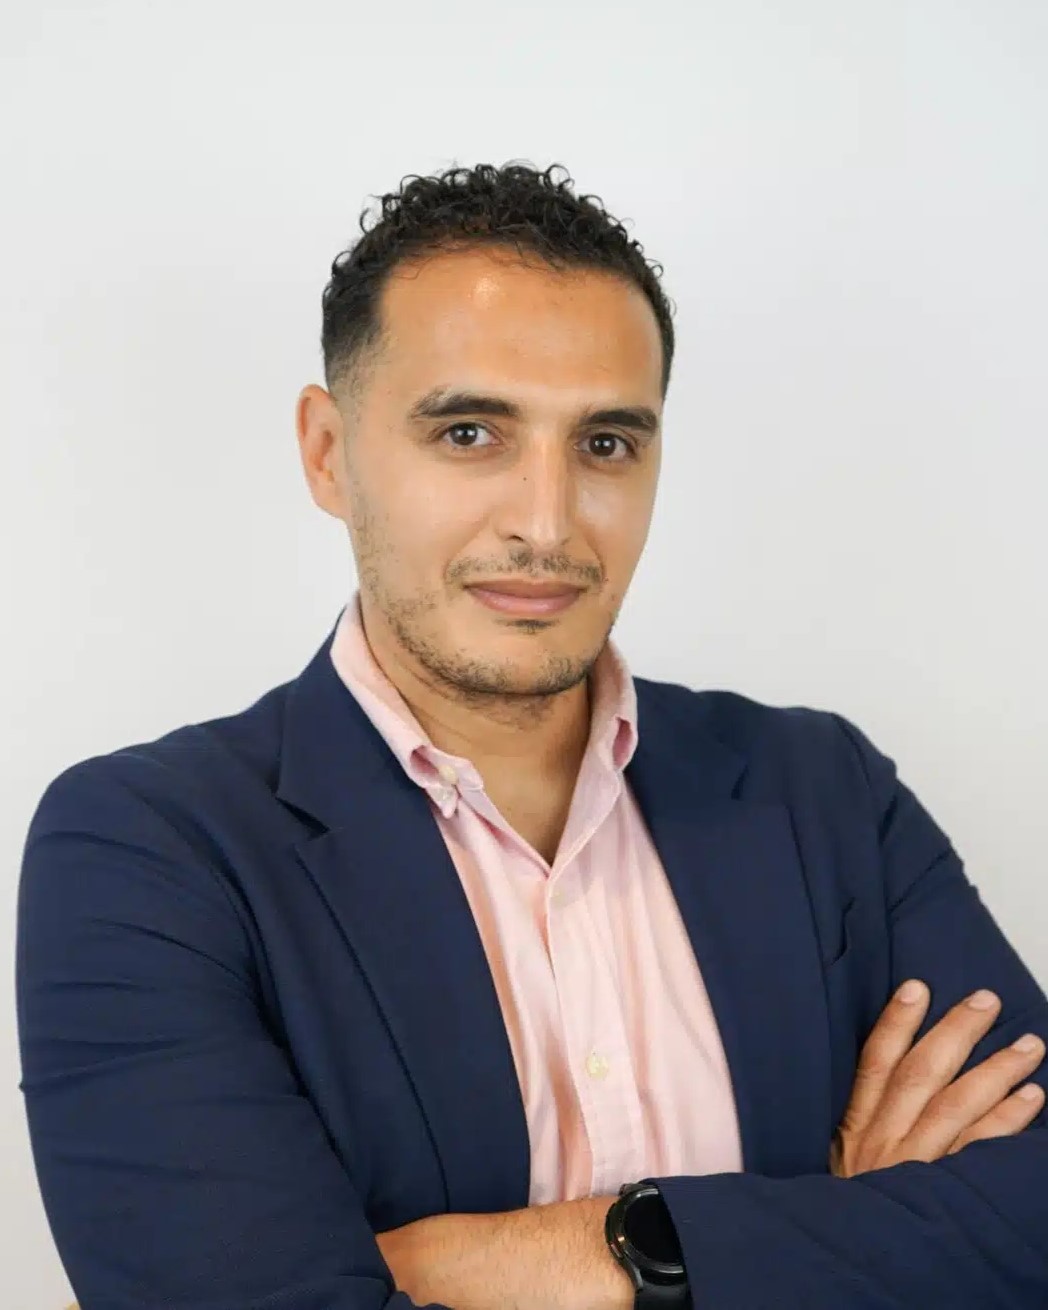 Expert en transformation digitale, Partner dans un cabinet de consulting et expert auprès de l’Institut Marocain d’Intelligence Stratégique (IMIS), Mouad Agouzoul a répondu à nos questions concernant la souveraineté numérique pour le Maroc.